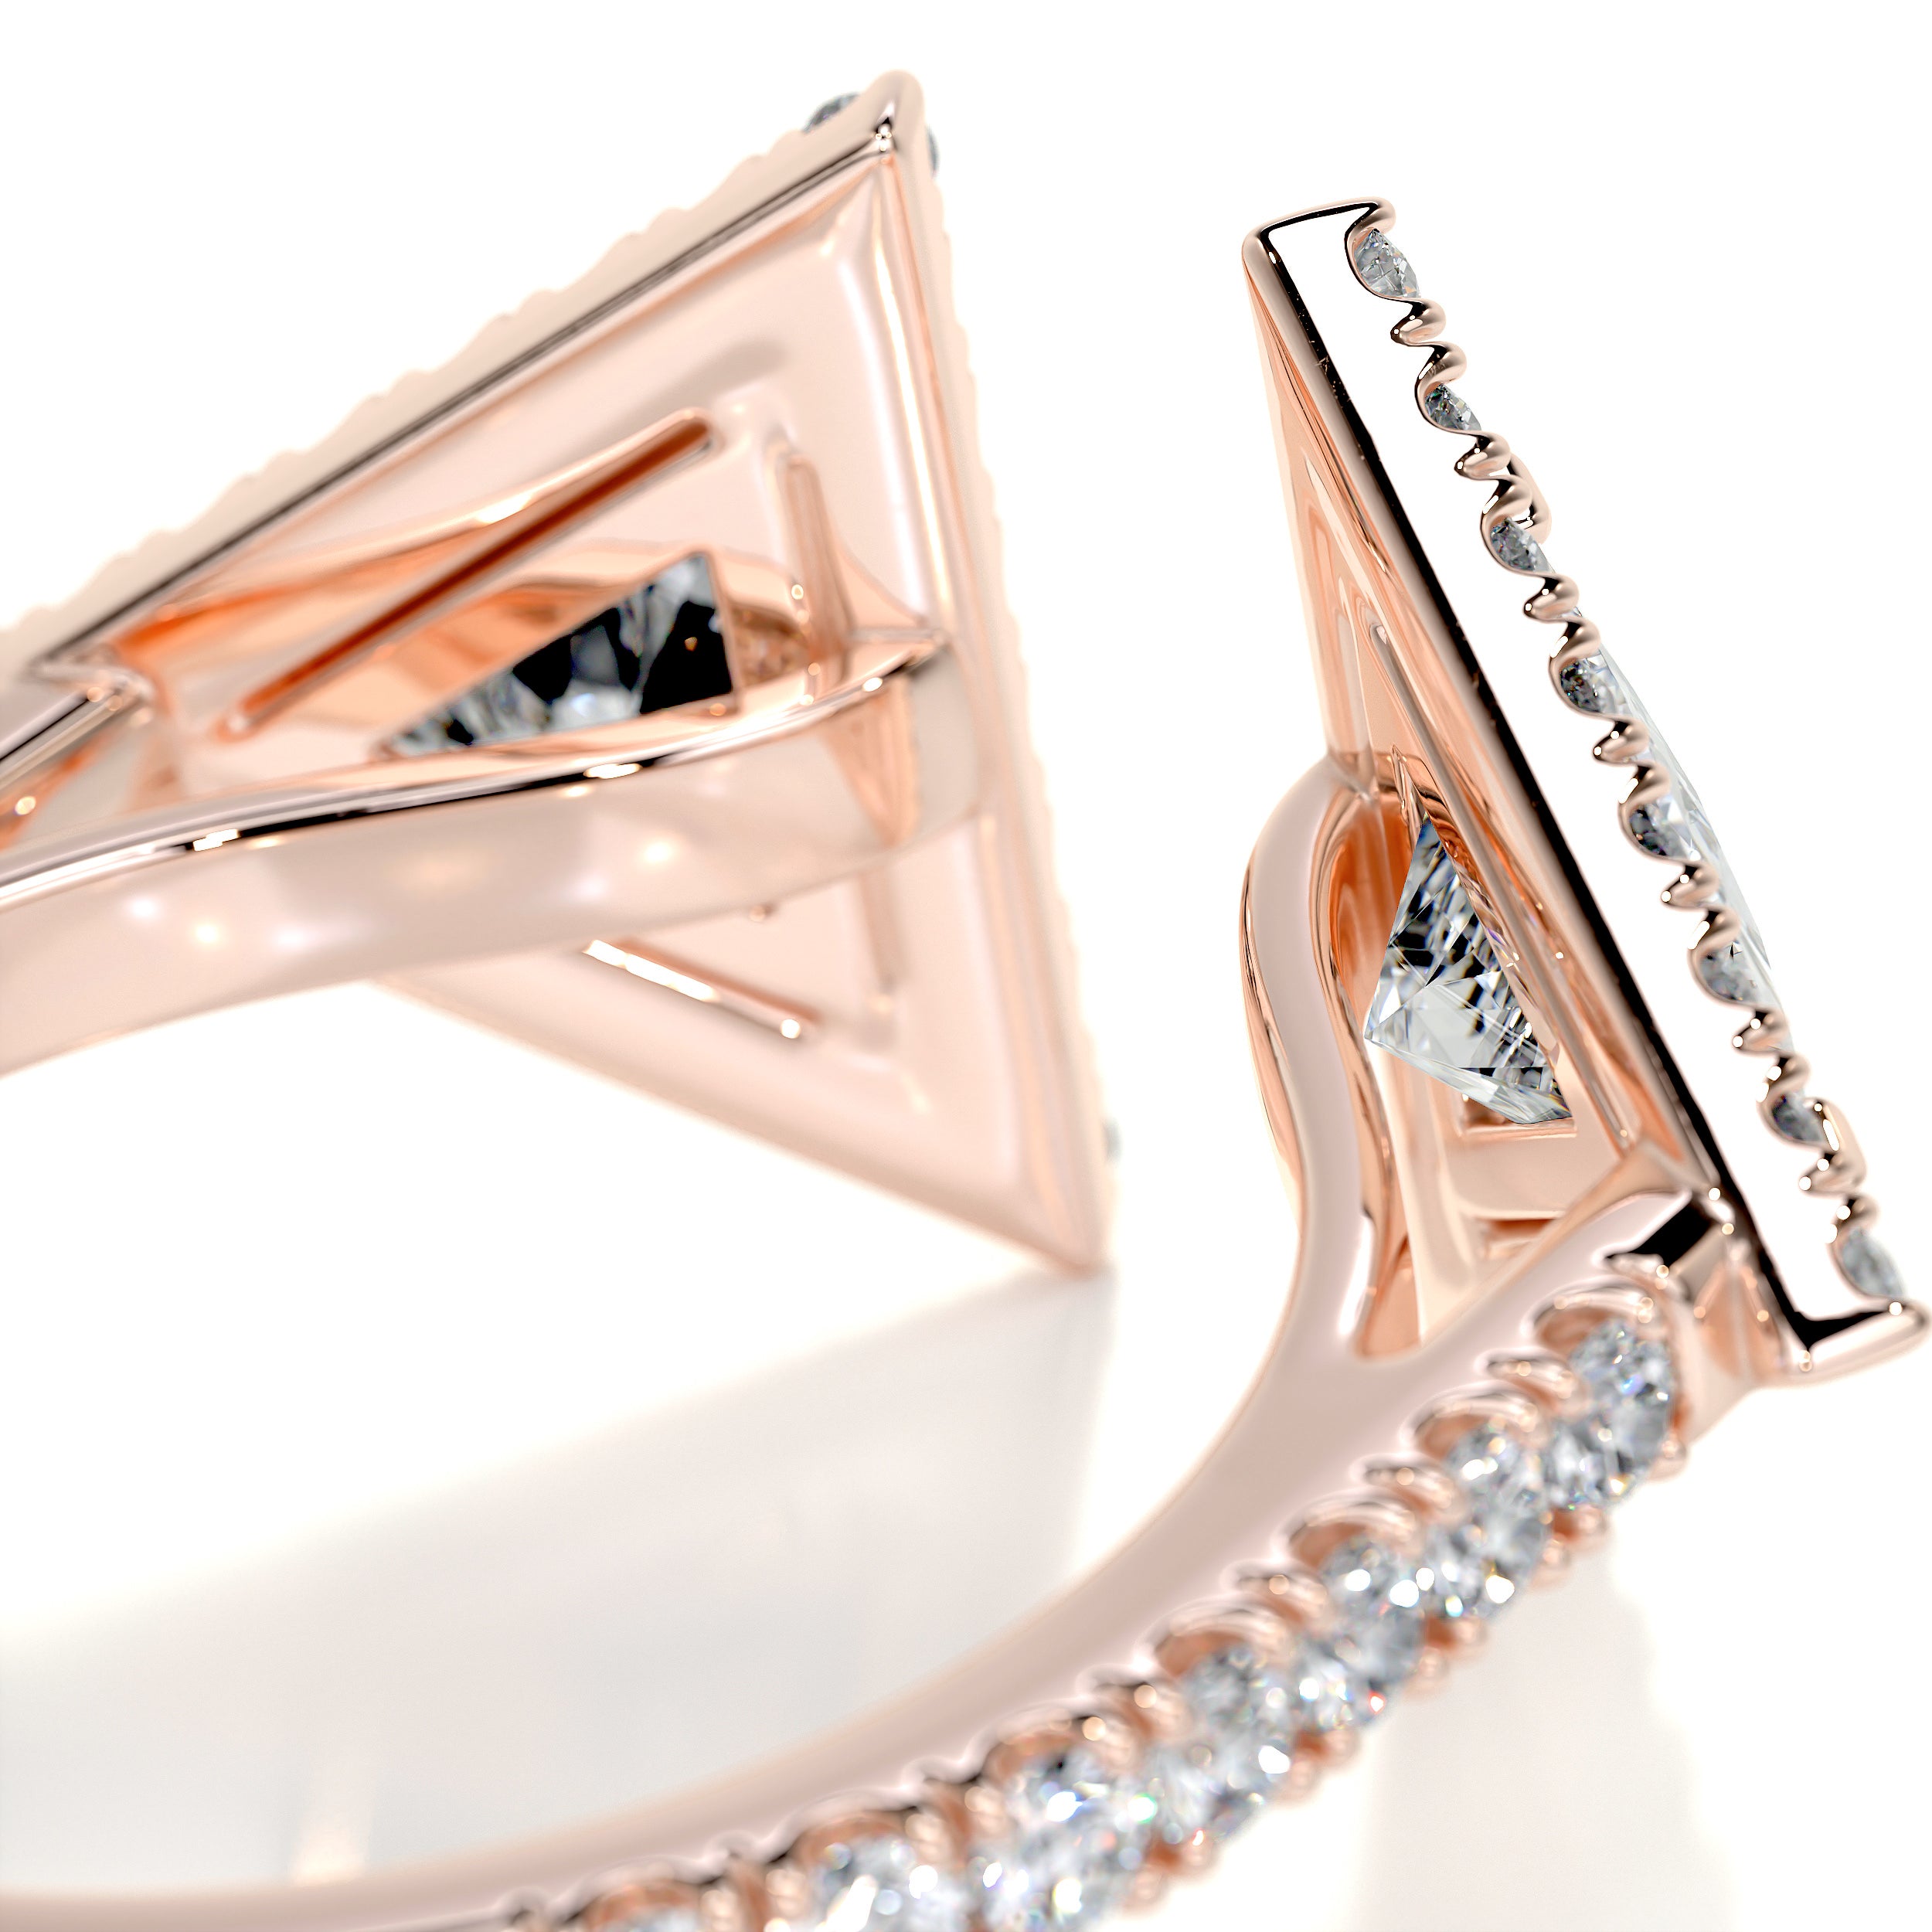 Jade Fashion Diamond Ring   (1.5 carat) -14K Rose Gold